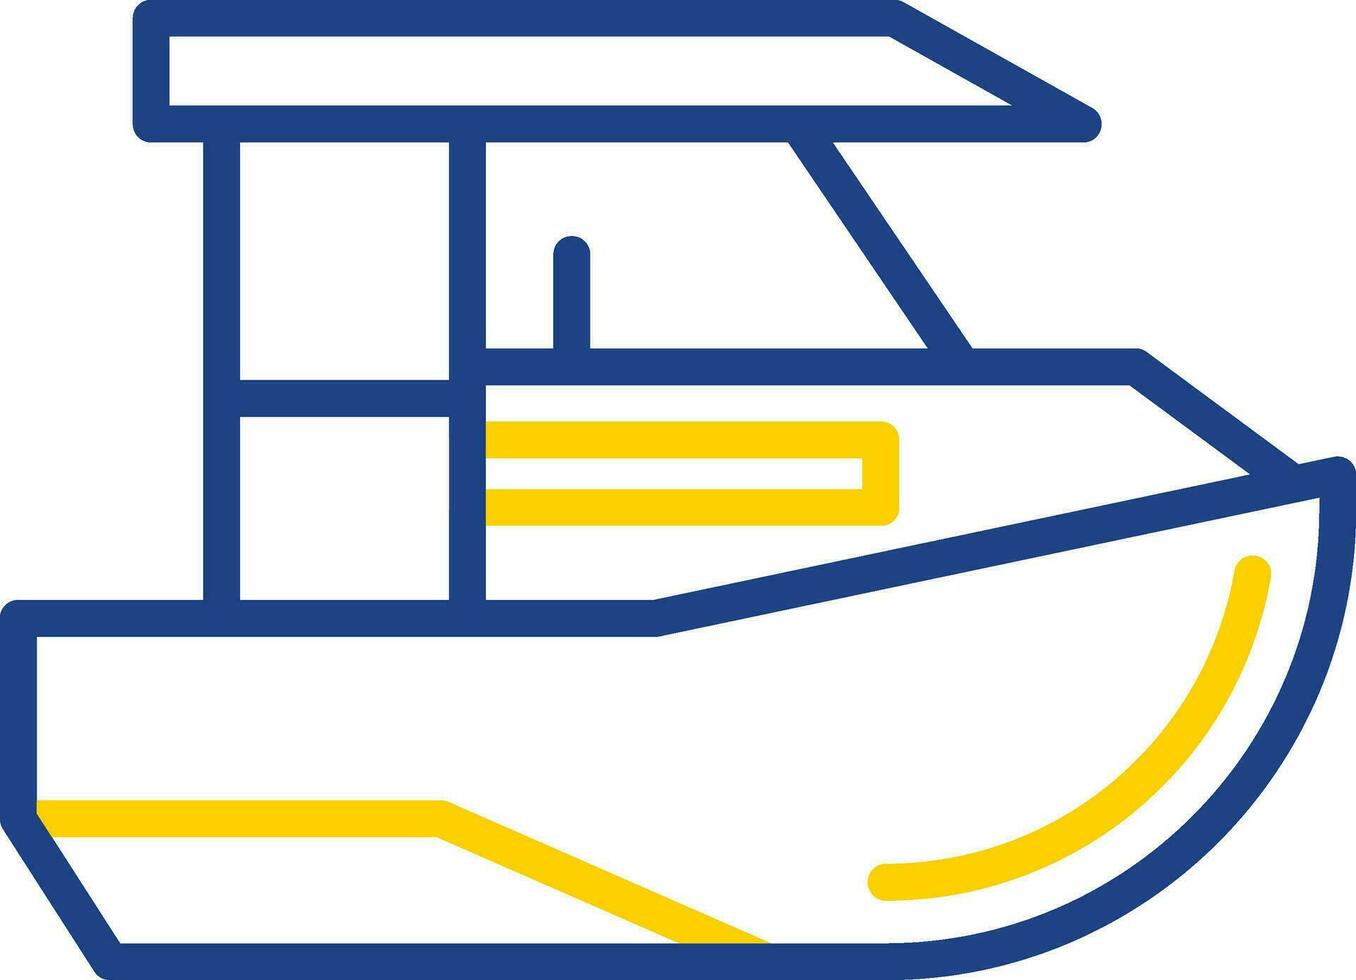 diseño de icono de vector de barco